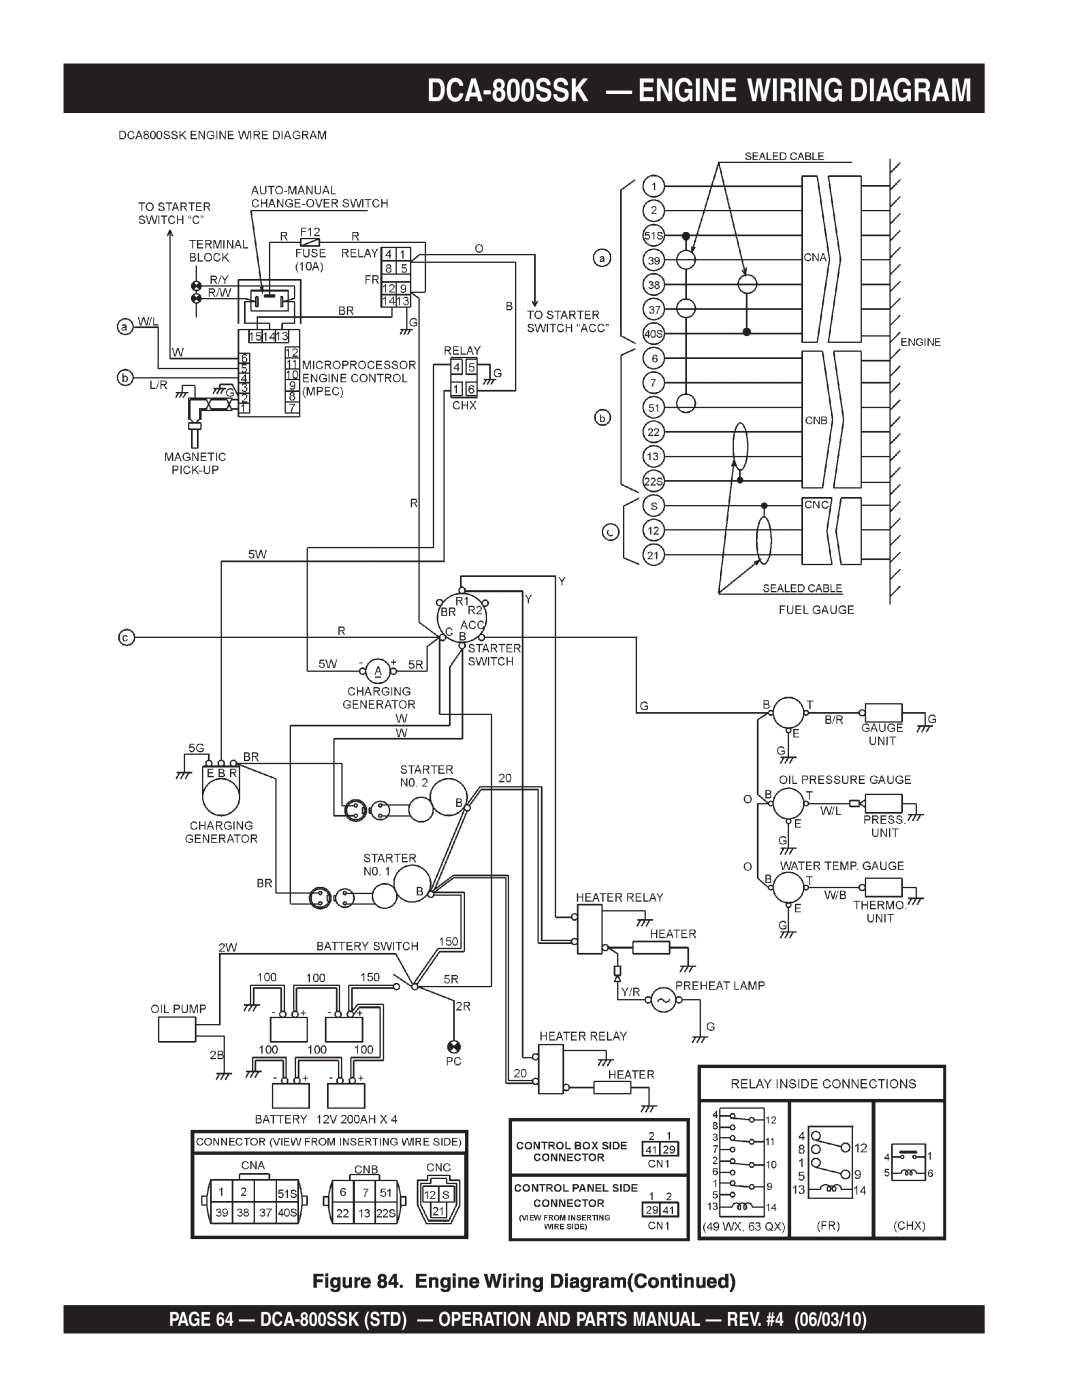 Multiquip operation manual DCA-800SSK - ENGINE WIRING DIAGRAM, Engine Wiring DiagramContinued 